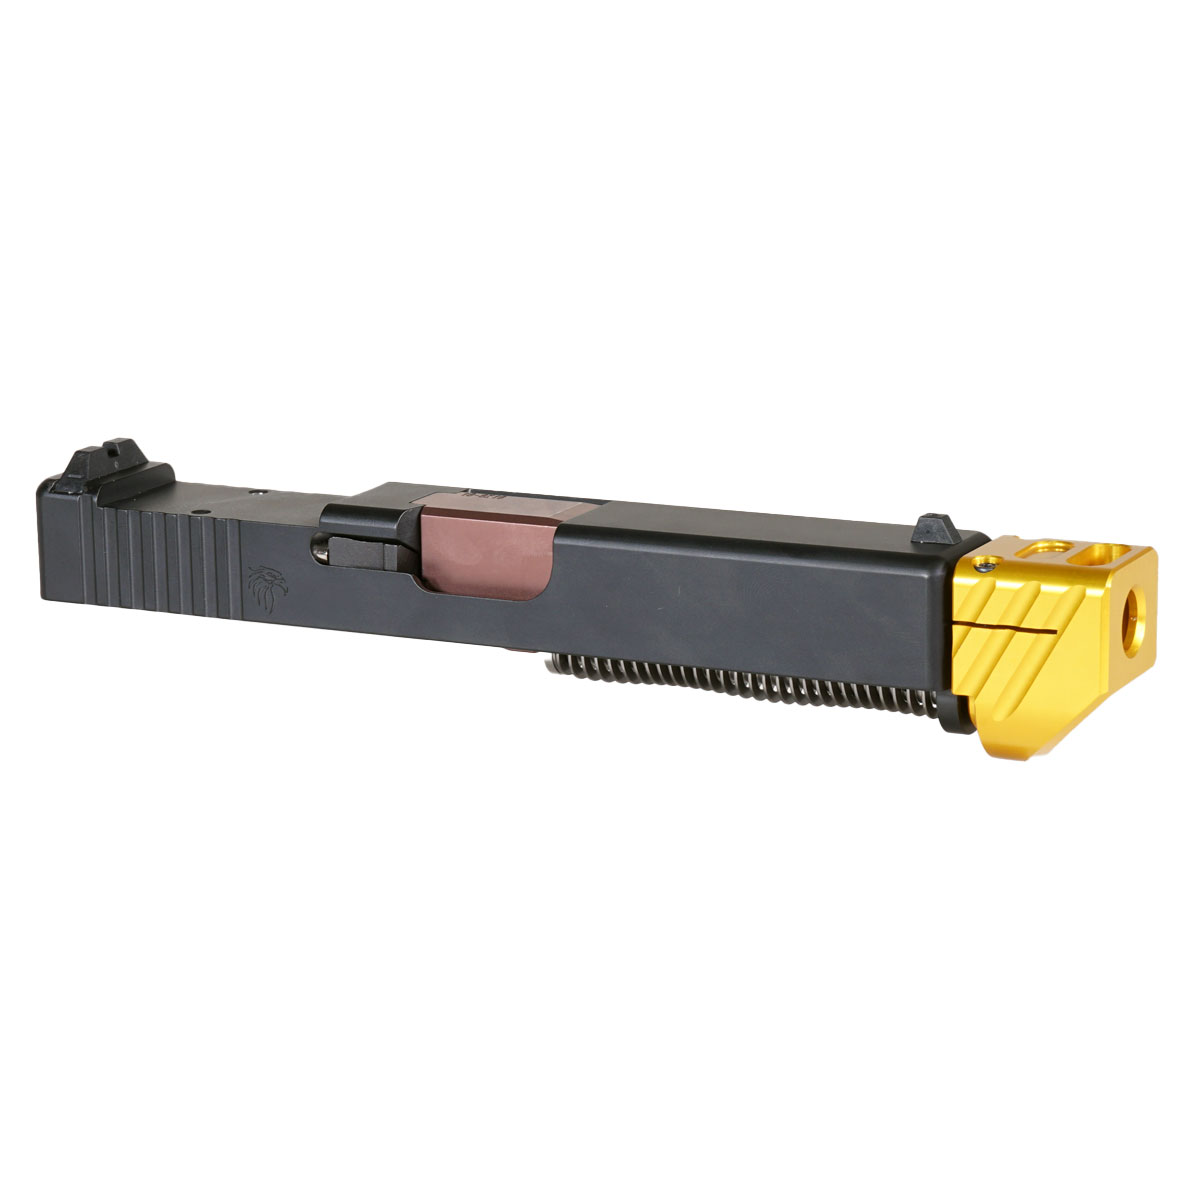 DTT 'Blockbuster V2 w/ Gold Compensator' 9mm Complete Slide Kit - Glock 19 Gen 1-3 Compatible